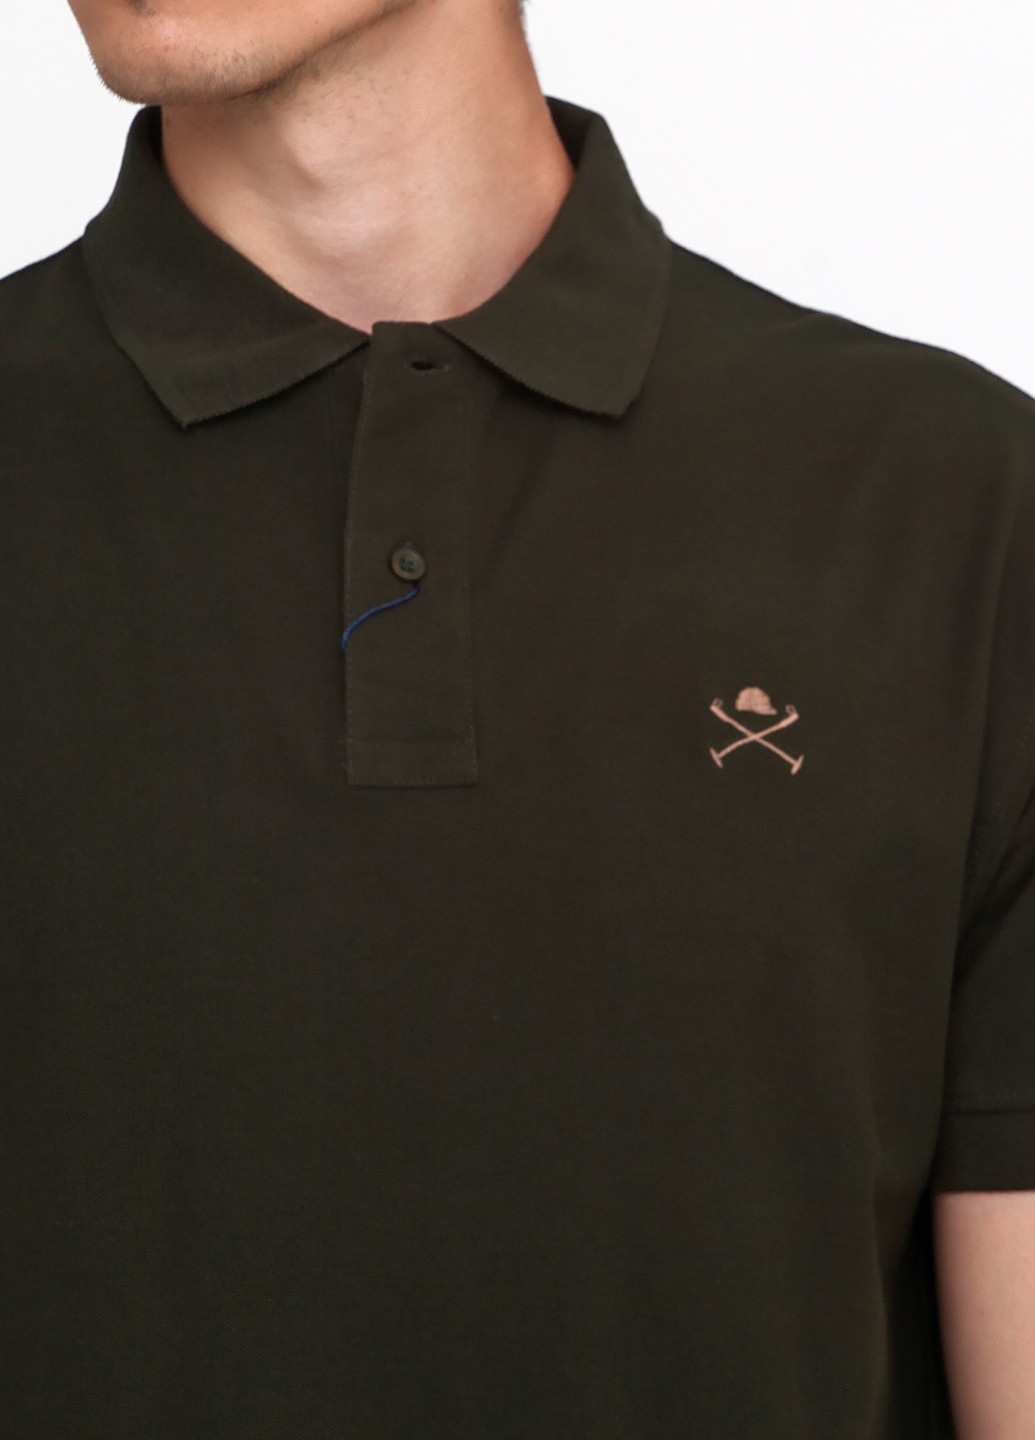 Оливковая (хаки) футболка-поло для мужчин Polo Club с рисунком